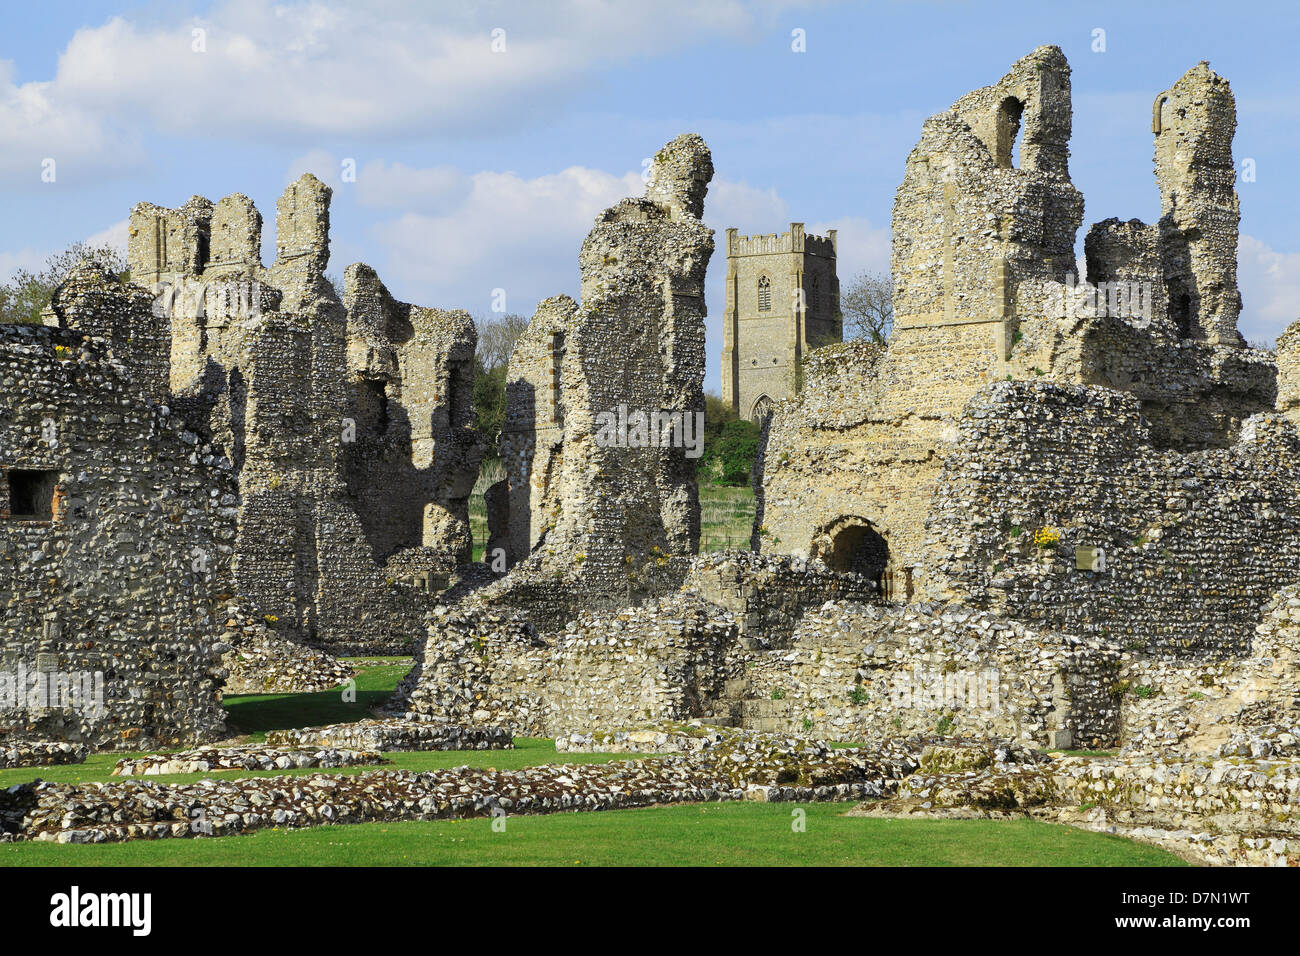 Castle Acre Prieuré, Norfolk, ruines monastiques, England, UK, monastère médiéval clunisien, prieurés Anglais Banque D'Images